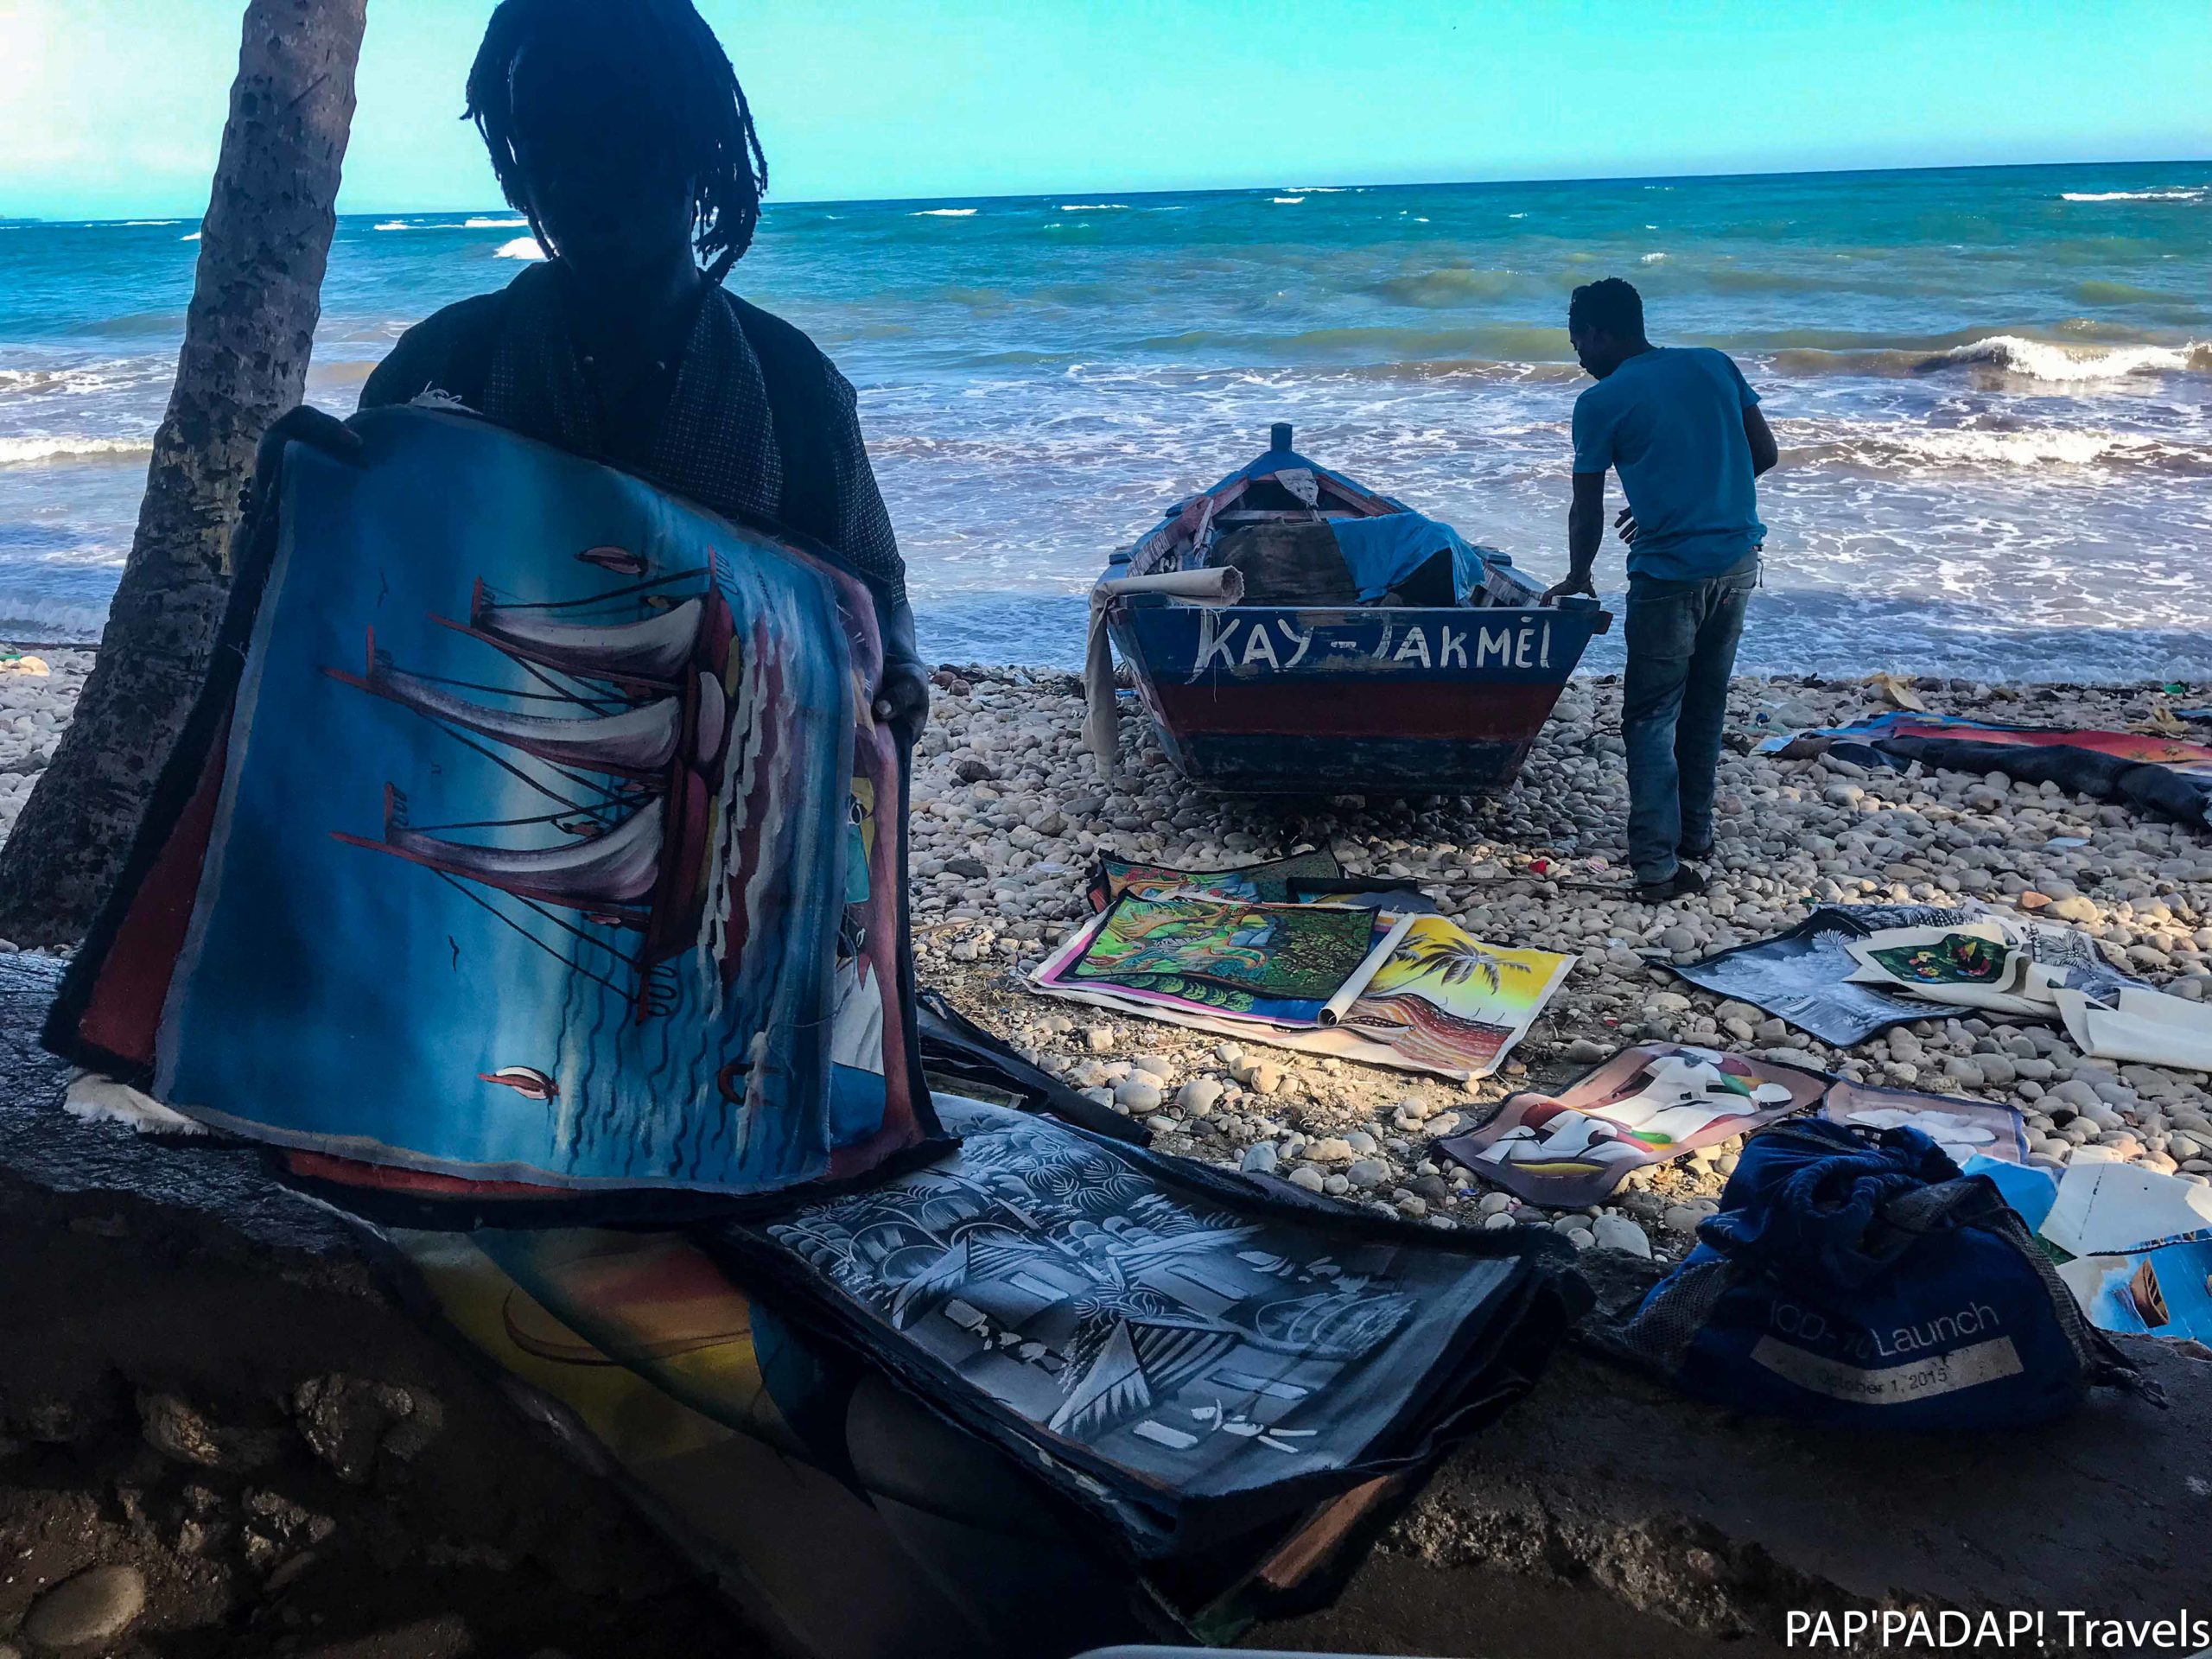 Vendeurs de tableau - Plage Raymond les bains - Sud Est - Haiti